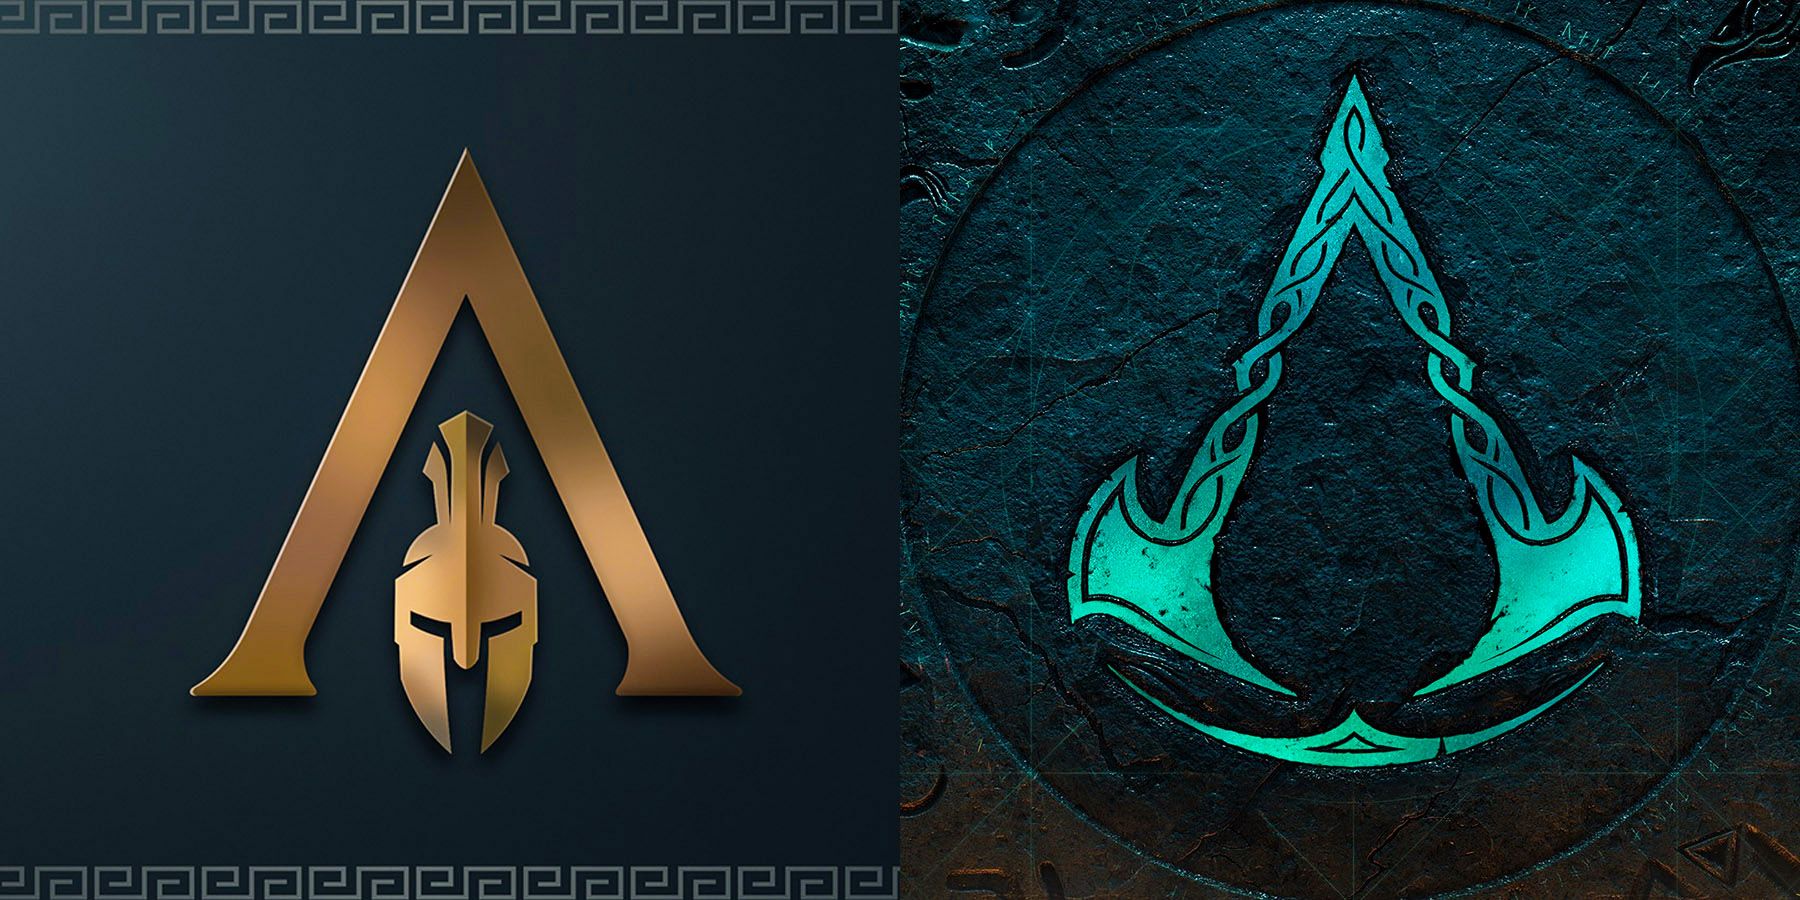 De Creed Odyssey van Assassin en de symbolen van Valhalla zijn veel betekenis verloren